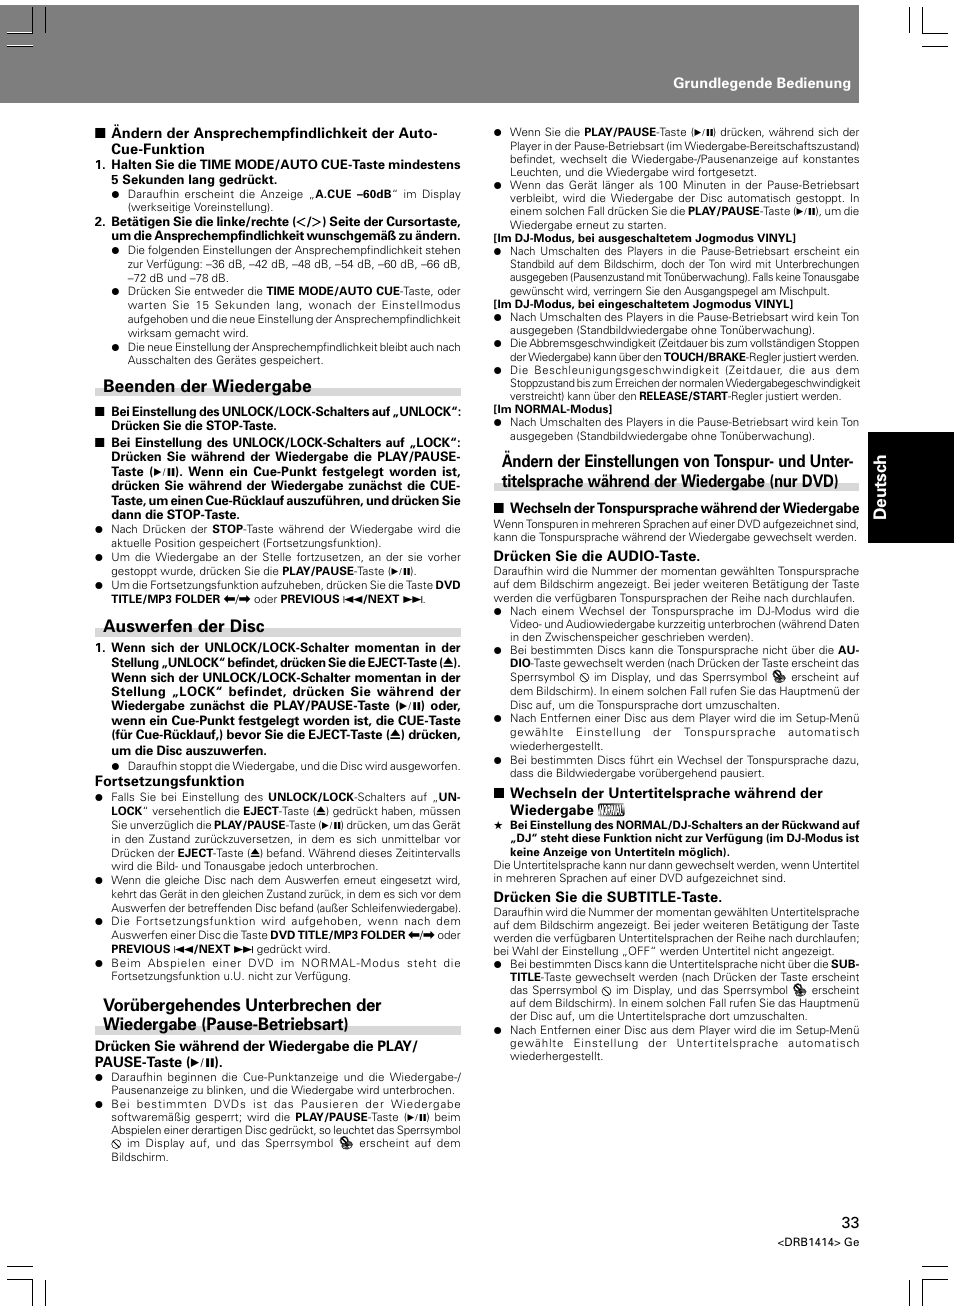 Deutsch, Beenden der wiedergabe, Auswerfen der disc | Pioneer DVJ-1000 User Manual | Page 143 / 319